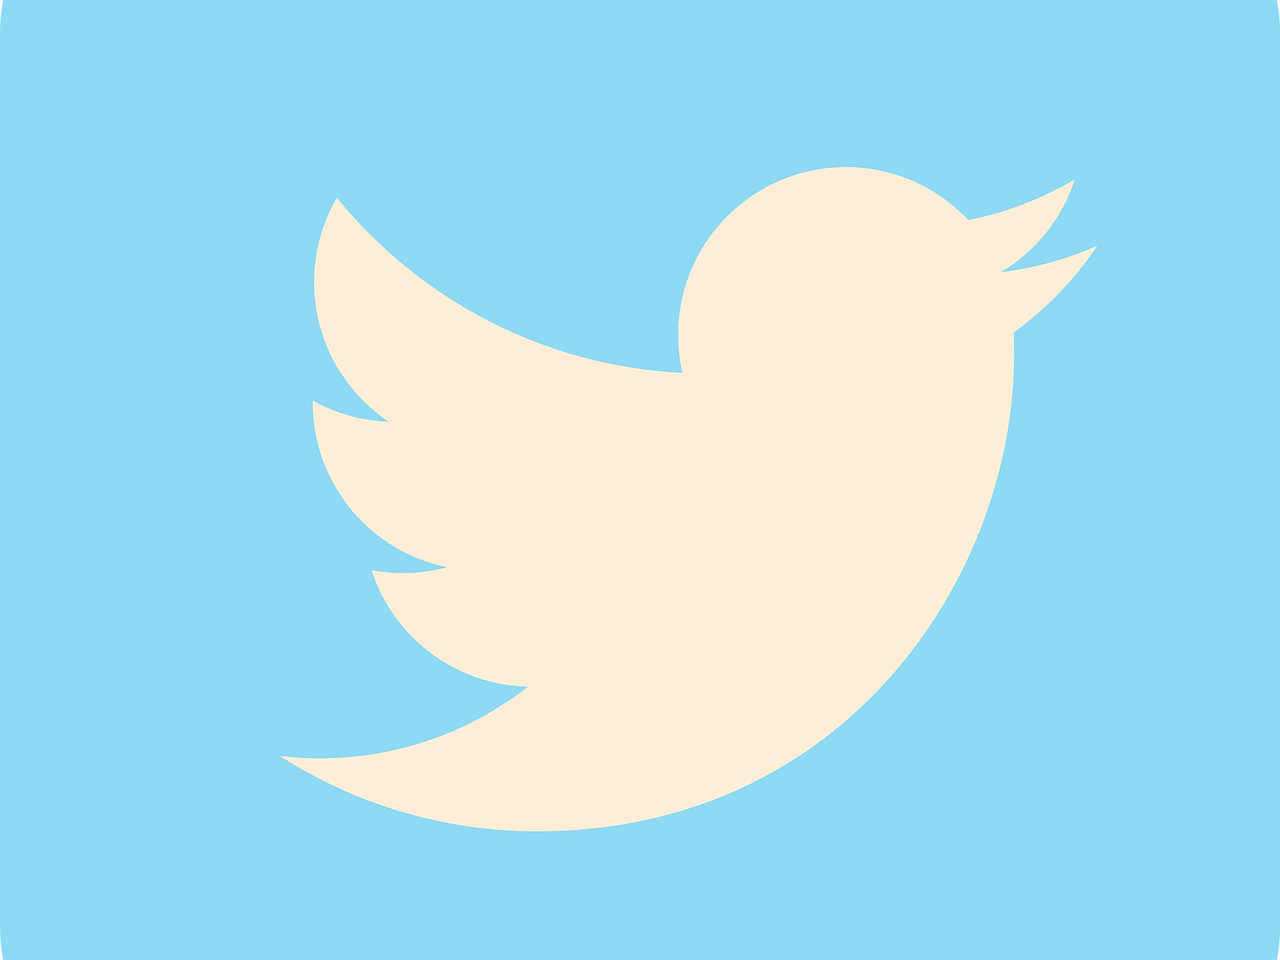 Twitter corporatiu: funcions i comunicació a la xarxa. Curs virtual (noves dates)